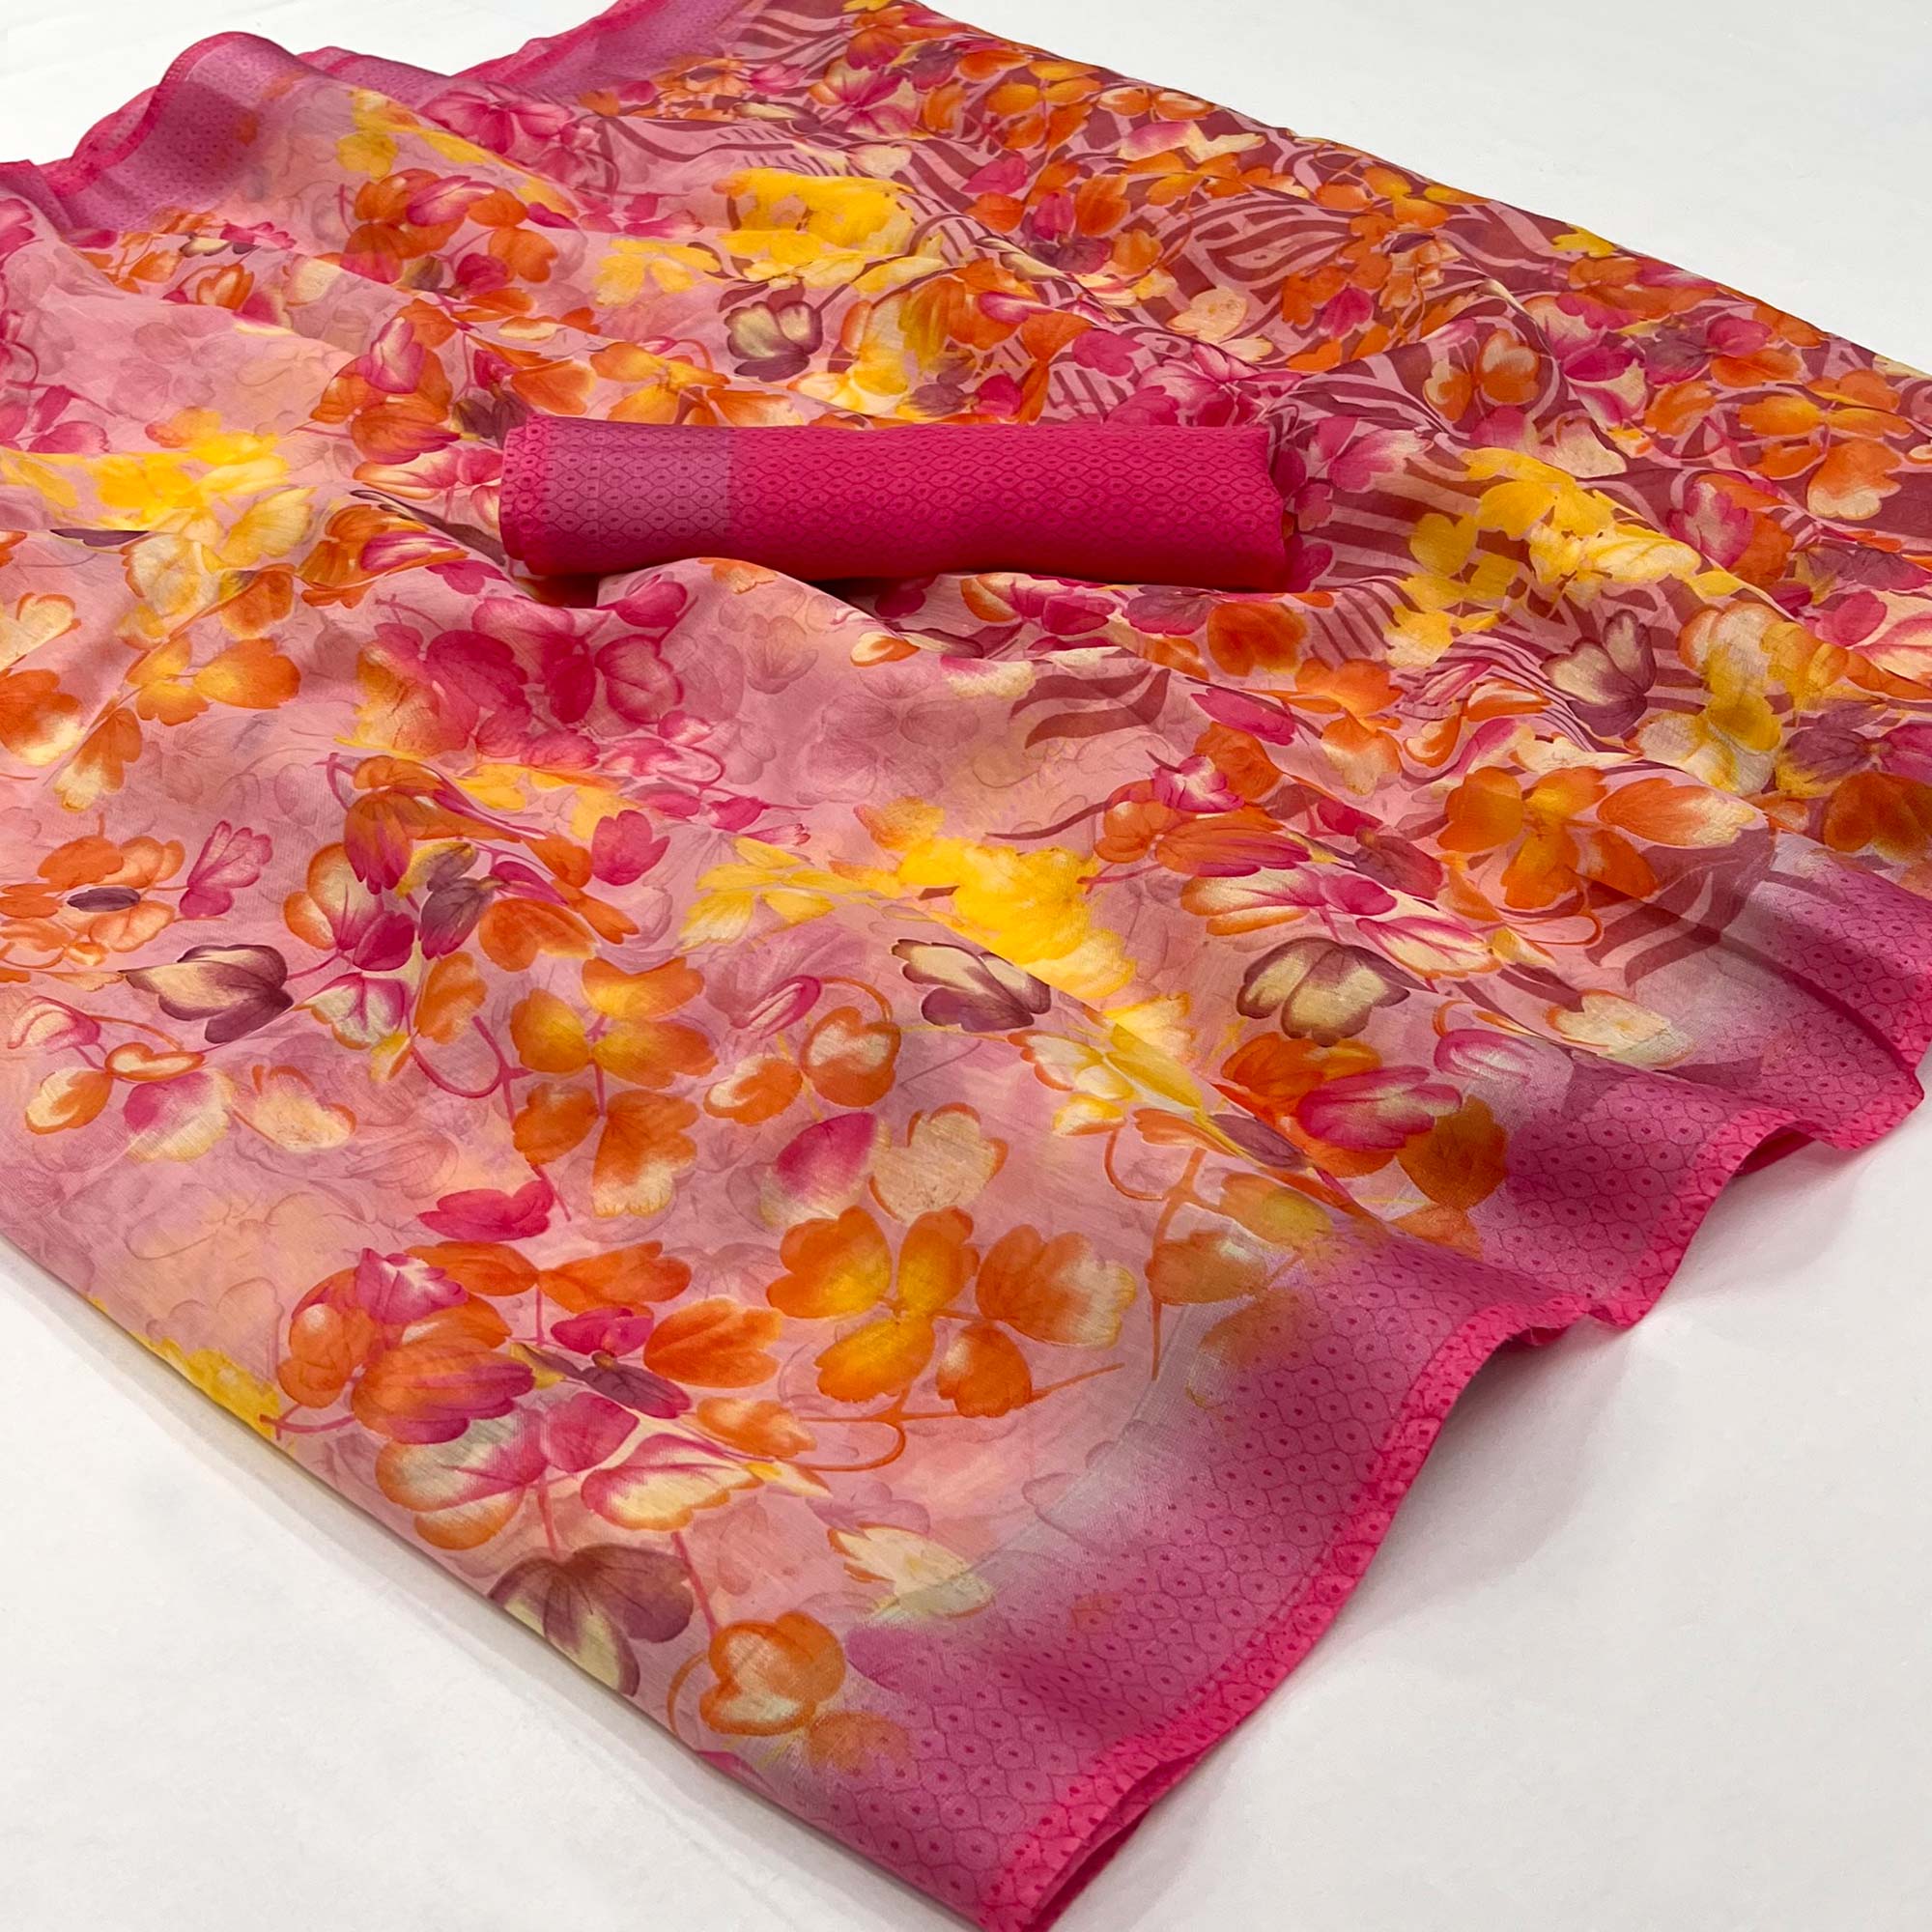 Pink Floral Printed Linen Saree